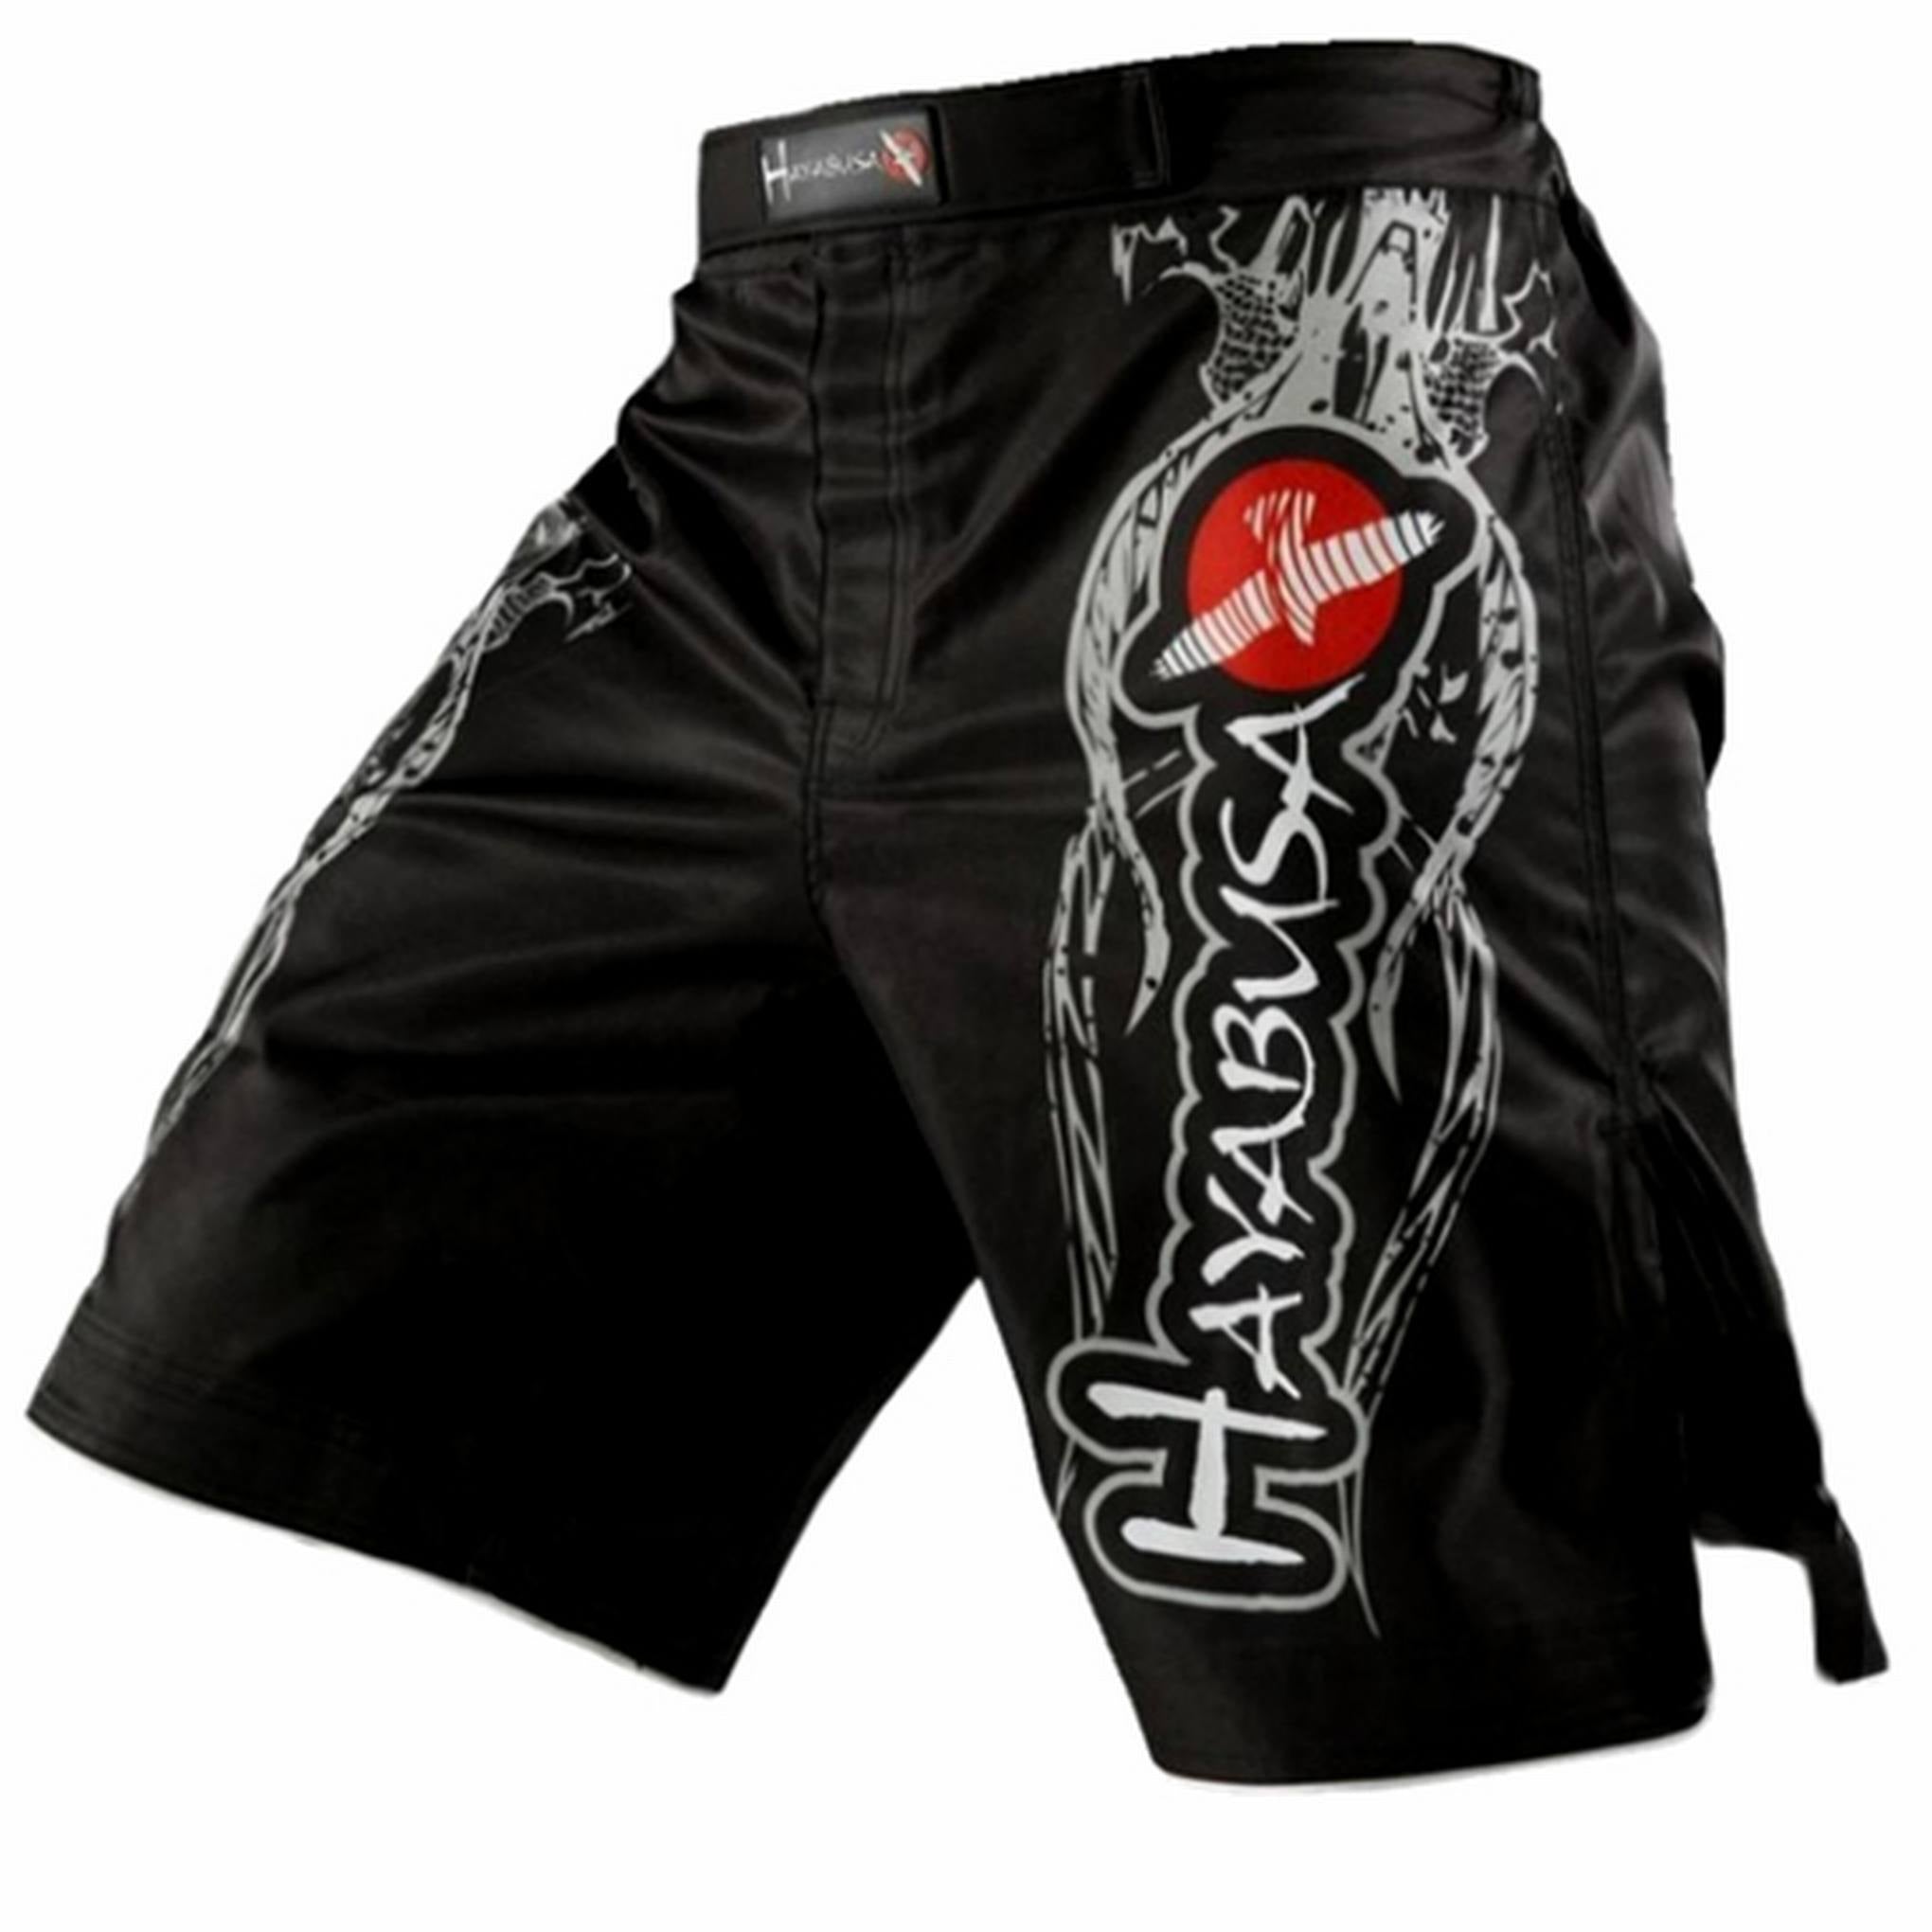 Pantalones Shorts Negros MMA K-1 Kick Boxing Boxeo CrossFit – Frikimanes